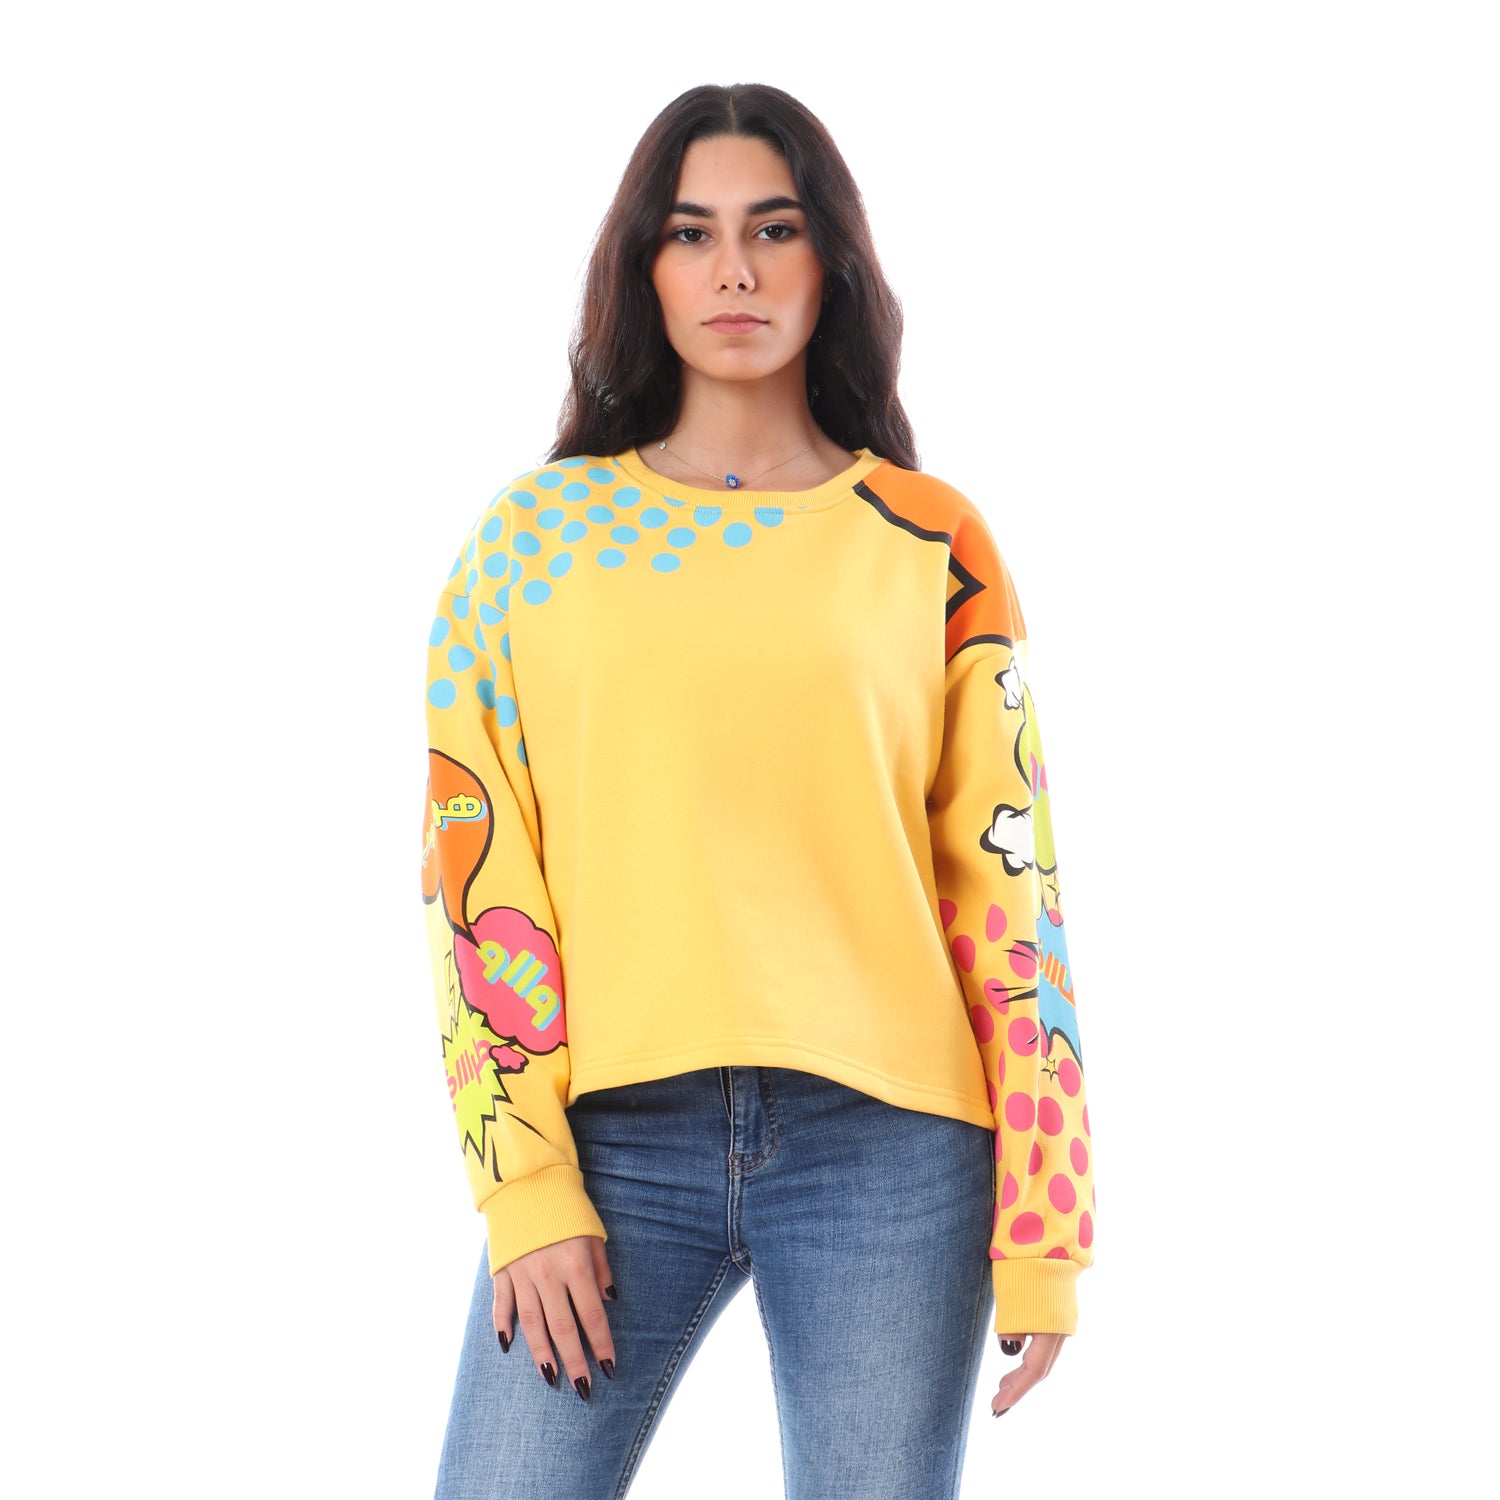 sweatshirts for women - NAS Trends 